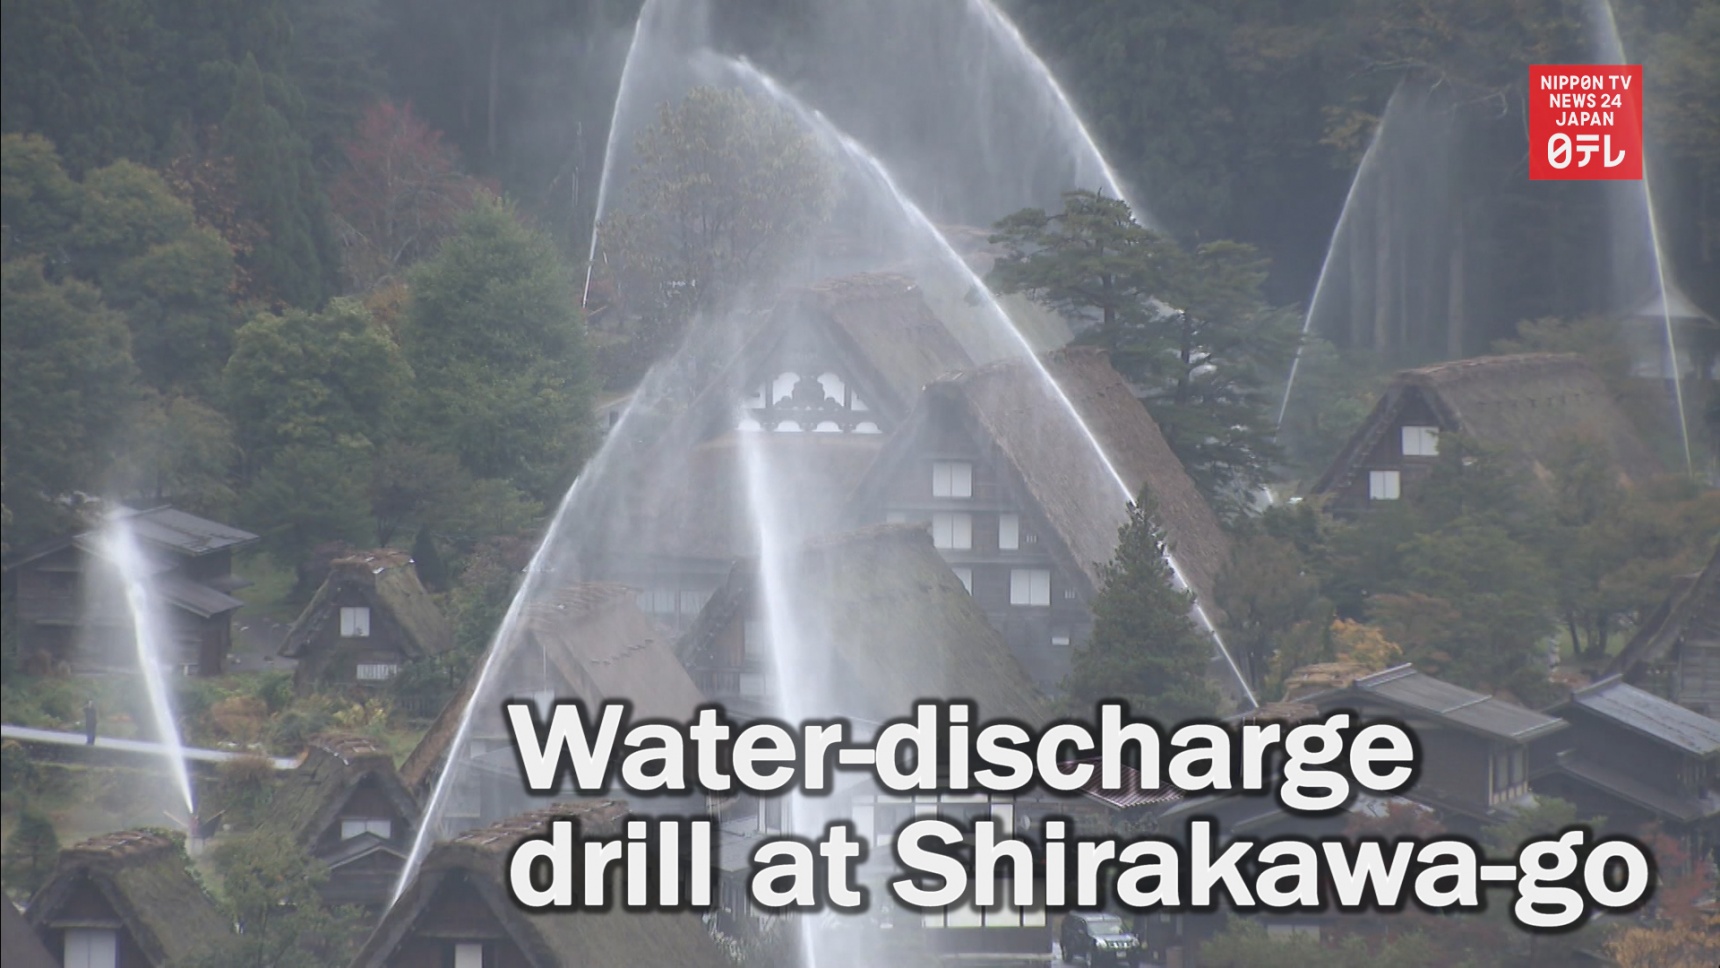 Discharge Drill at Shirakawago Making Waves